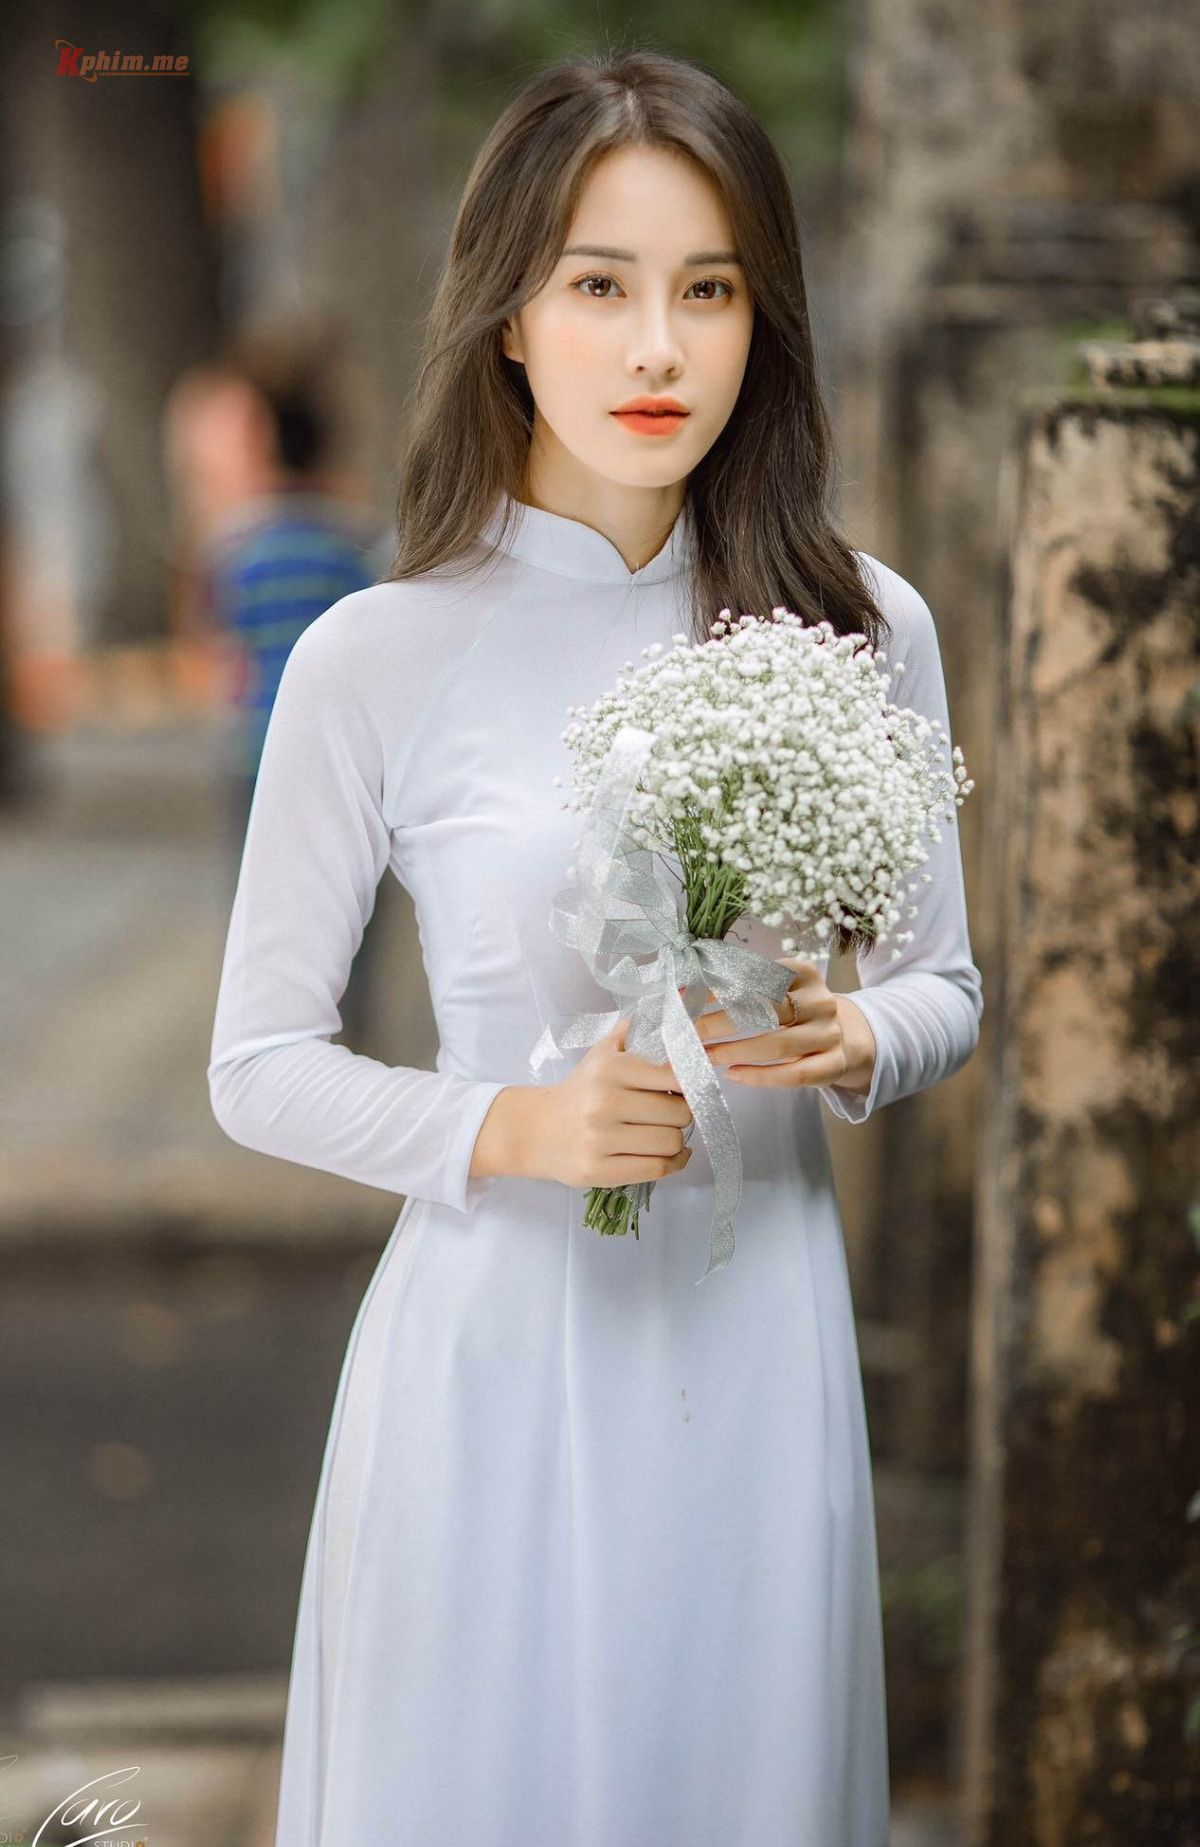 Tuyển tập girl xinh gái đẹp Việt Nam mặc áo dài đẹp mê hồn #132 - 4